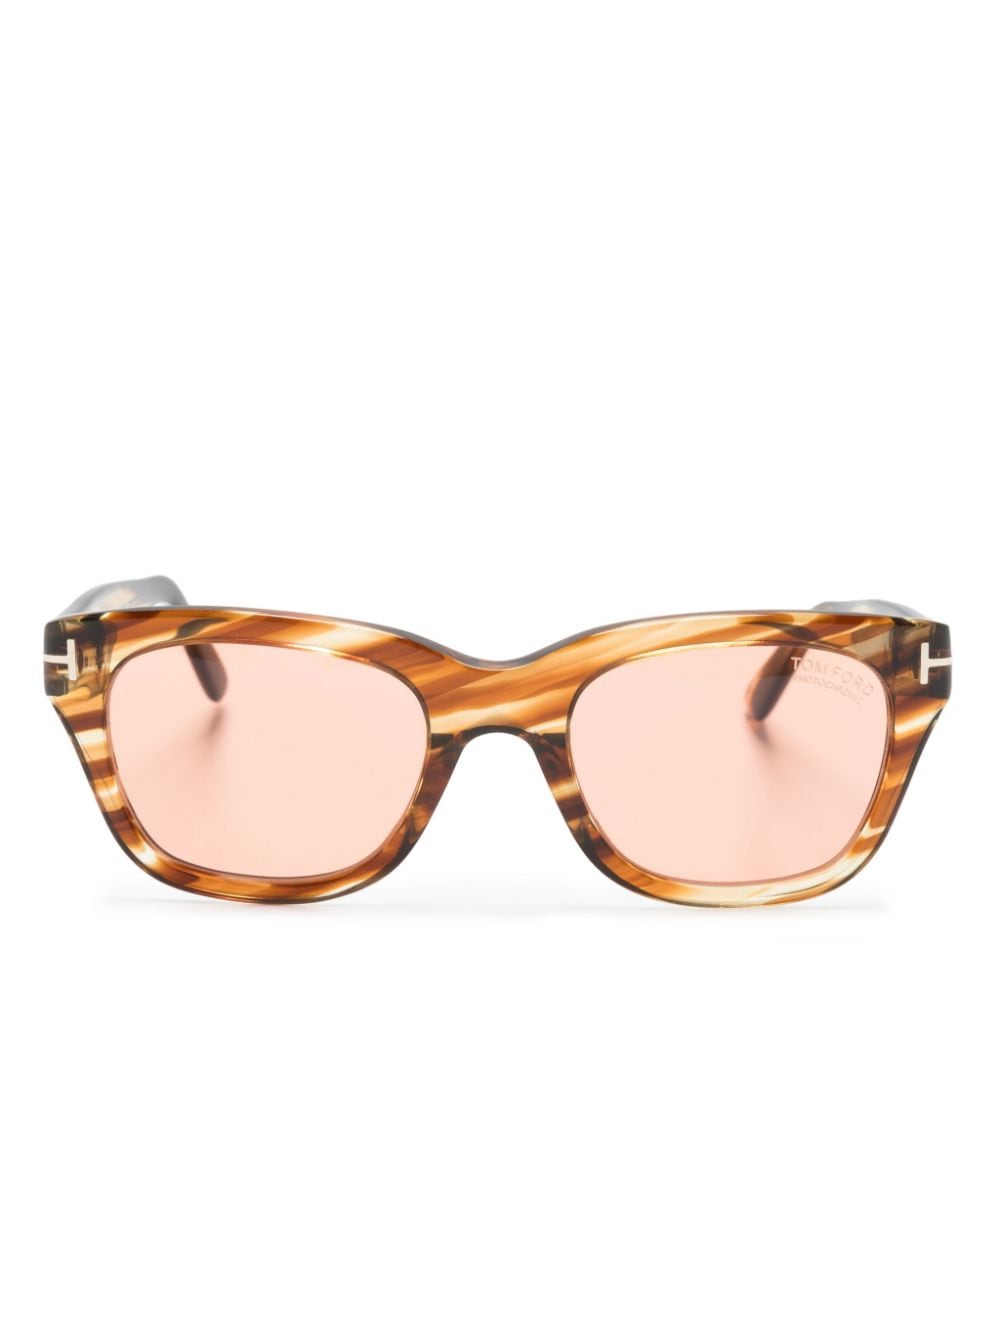 TOM FORD Eyewear tortoiseshell square-frame sunglasses Bruin